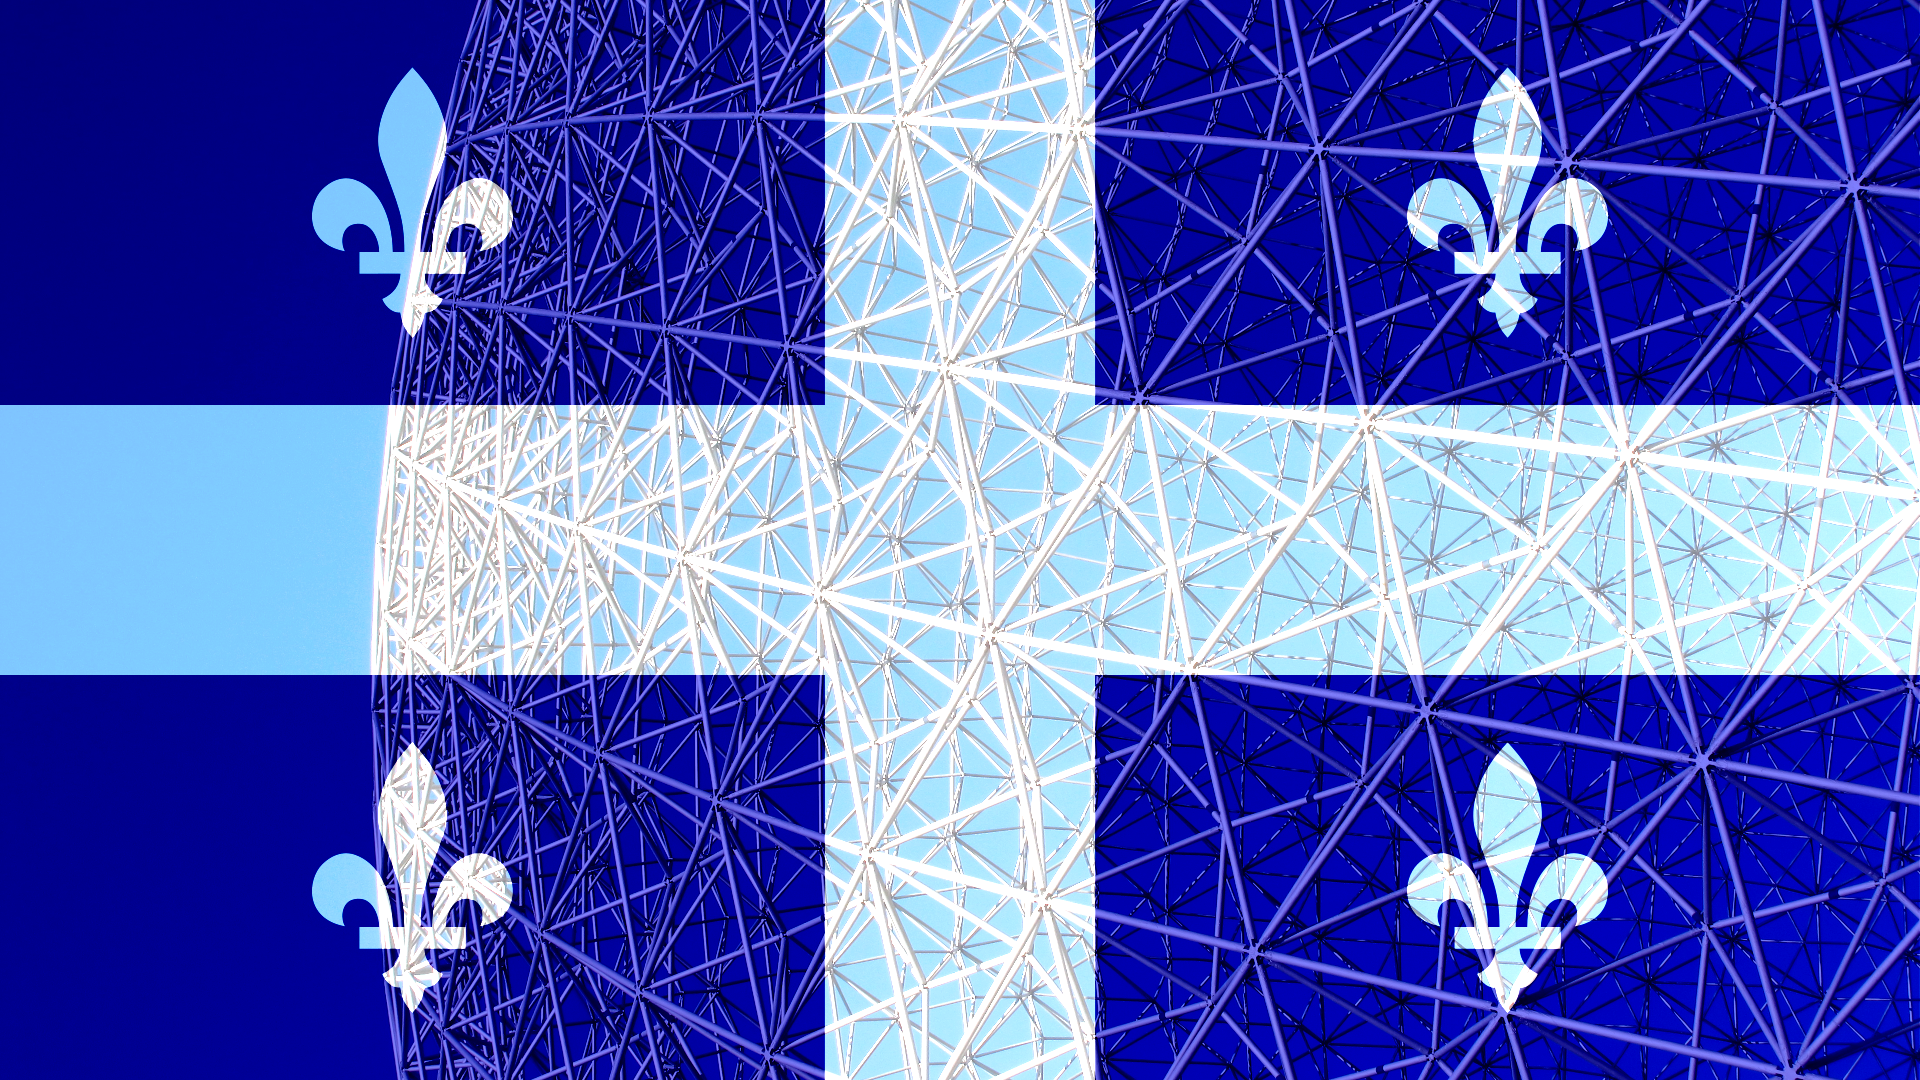 General 1920x1080 Montreal Biosphere Quebec blue flag digital art